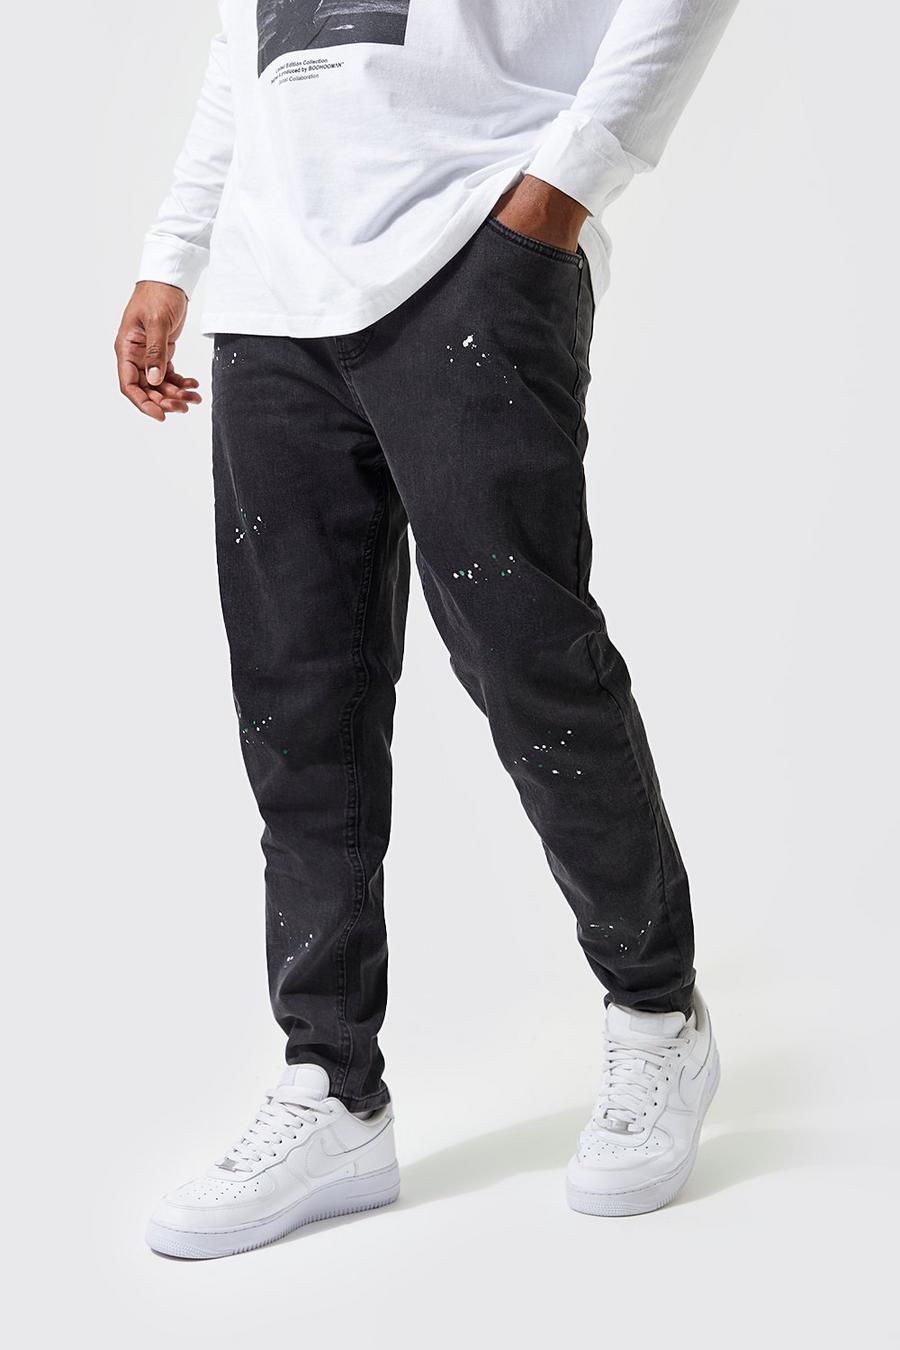 אפור ביניים gris סופר סקיני ג'ינס עם כתמי צבע למידות גדולות